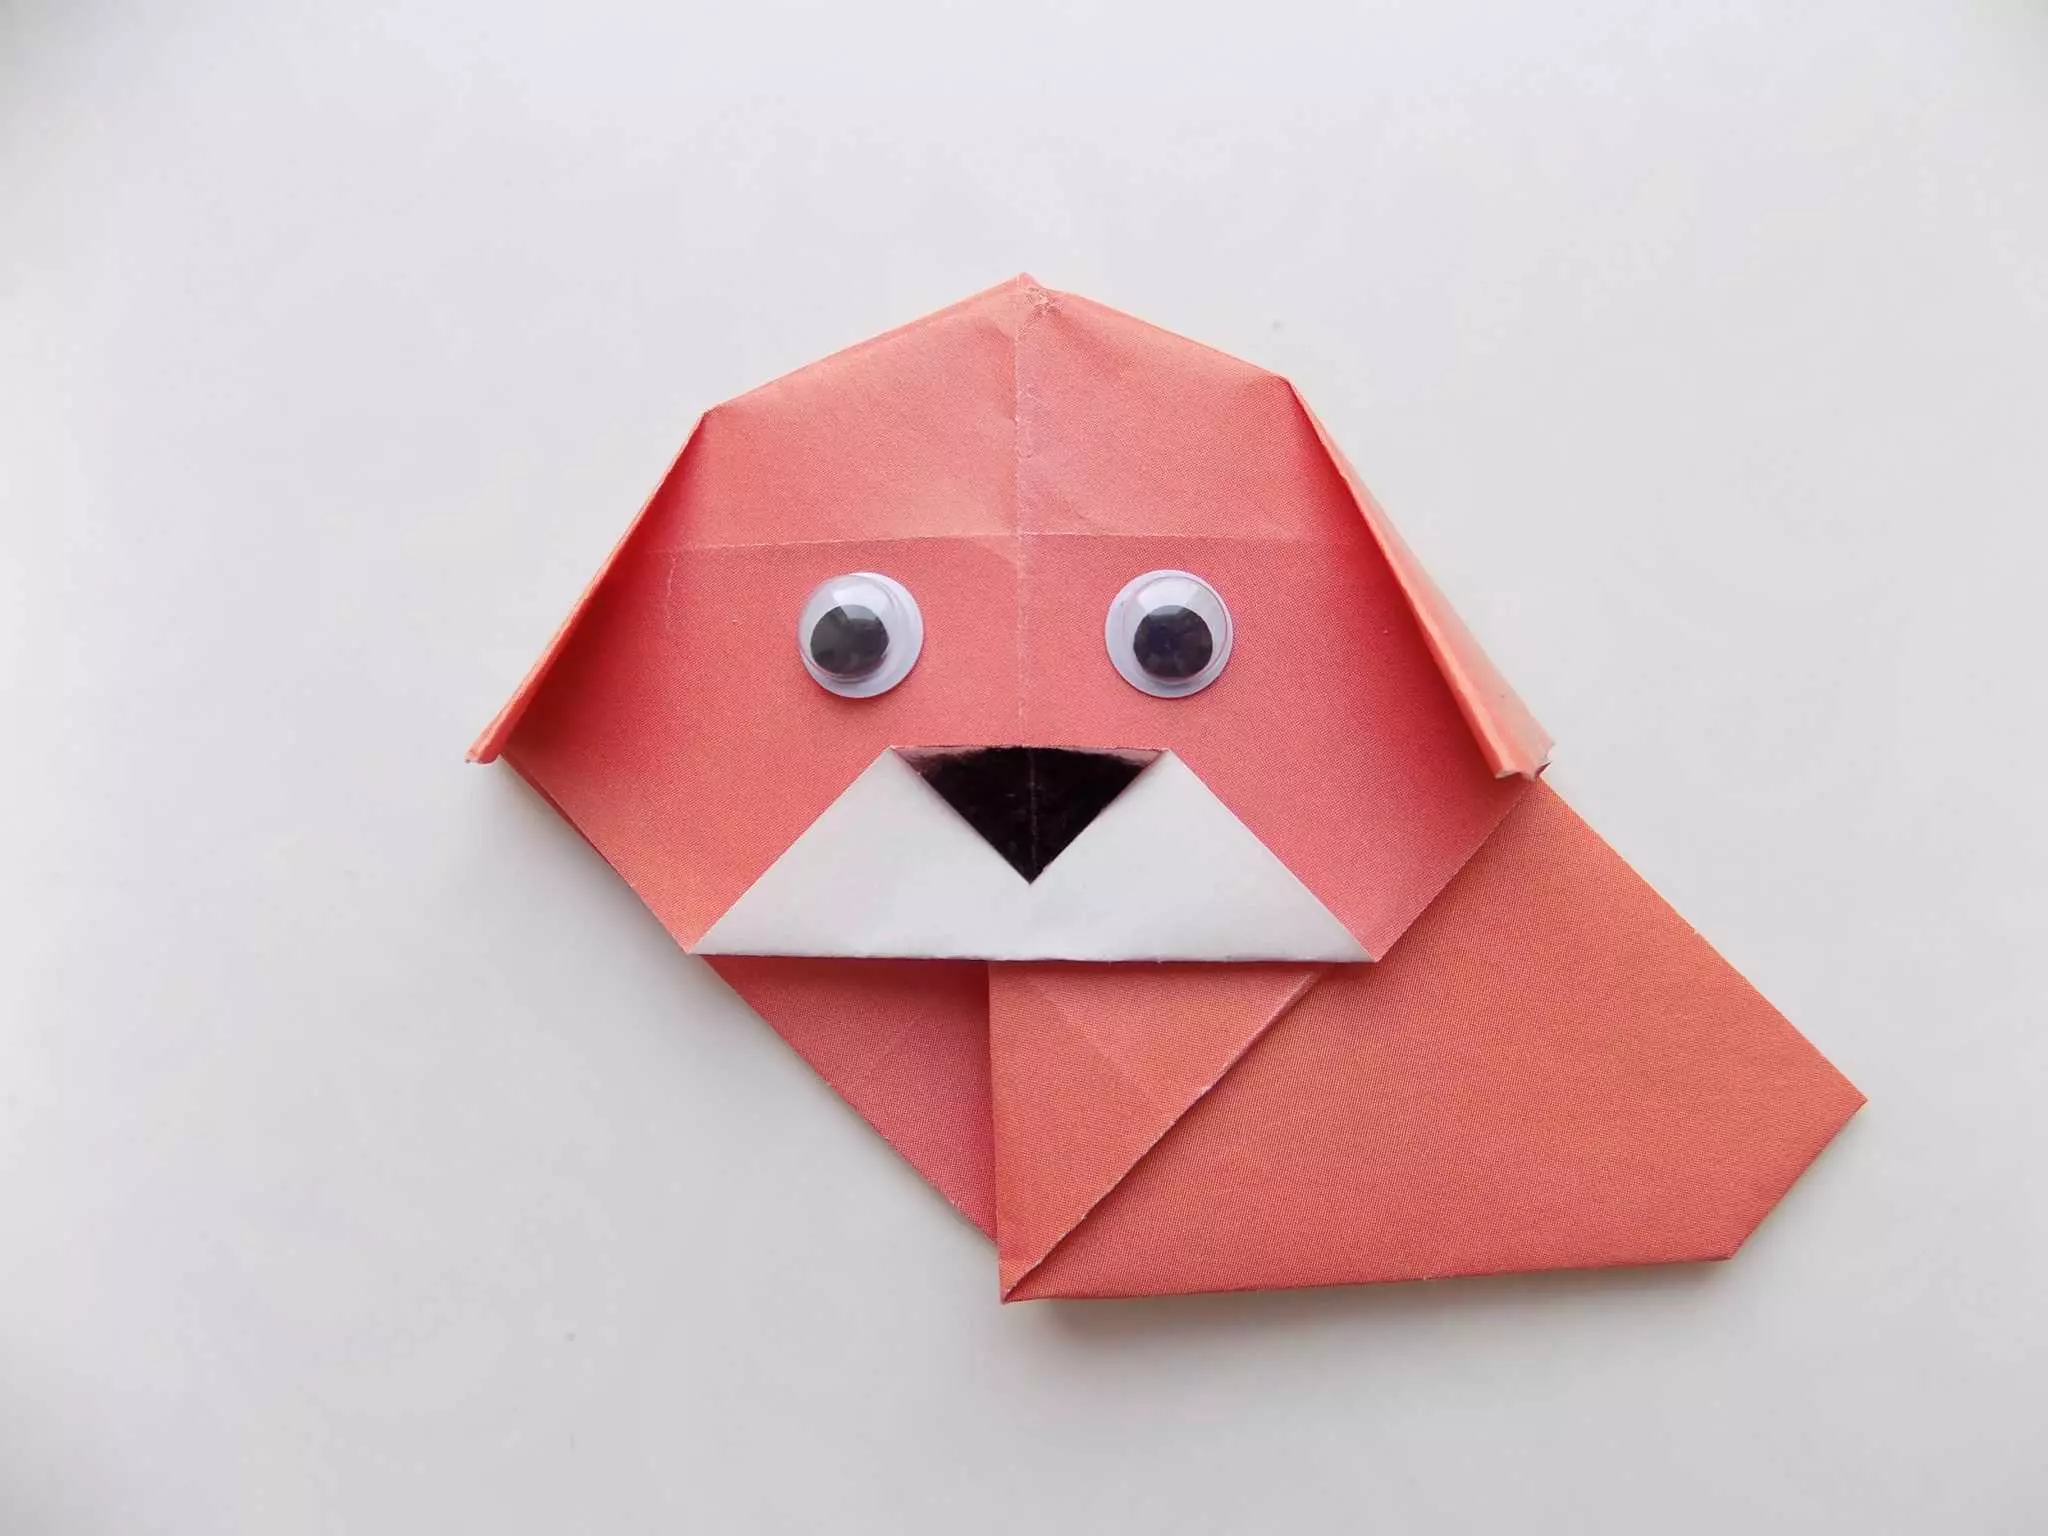 Paper Origami 7-8 urte bitarteko haurrentzako: neska-mutilentzako eskema sinpleak. Nola egin origami Egin zeure burua faseetan? 26984_47